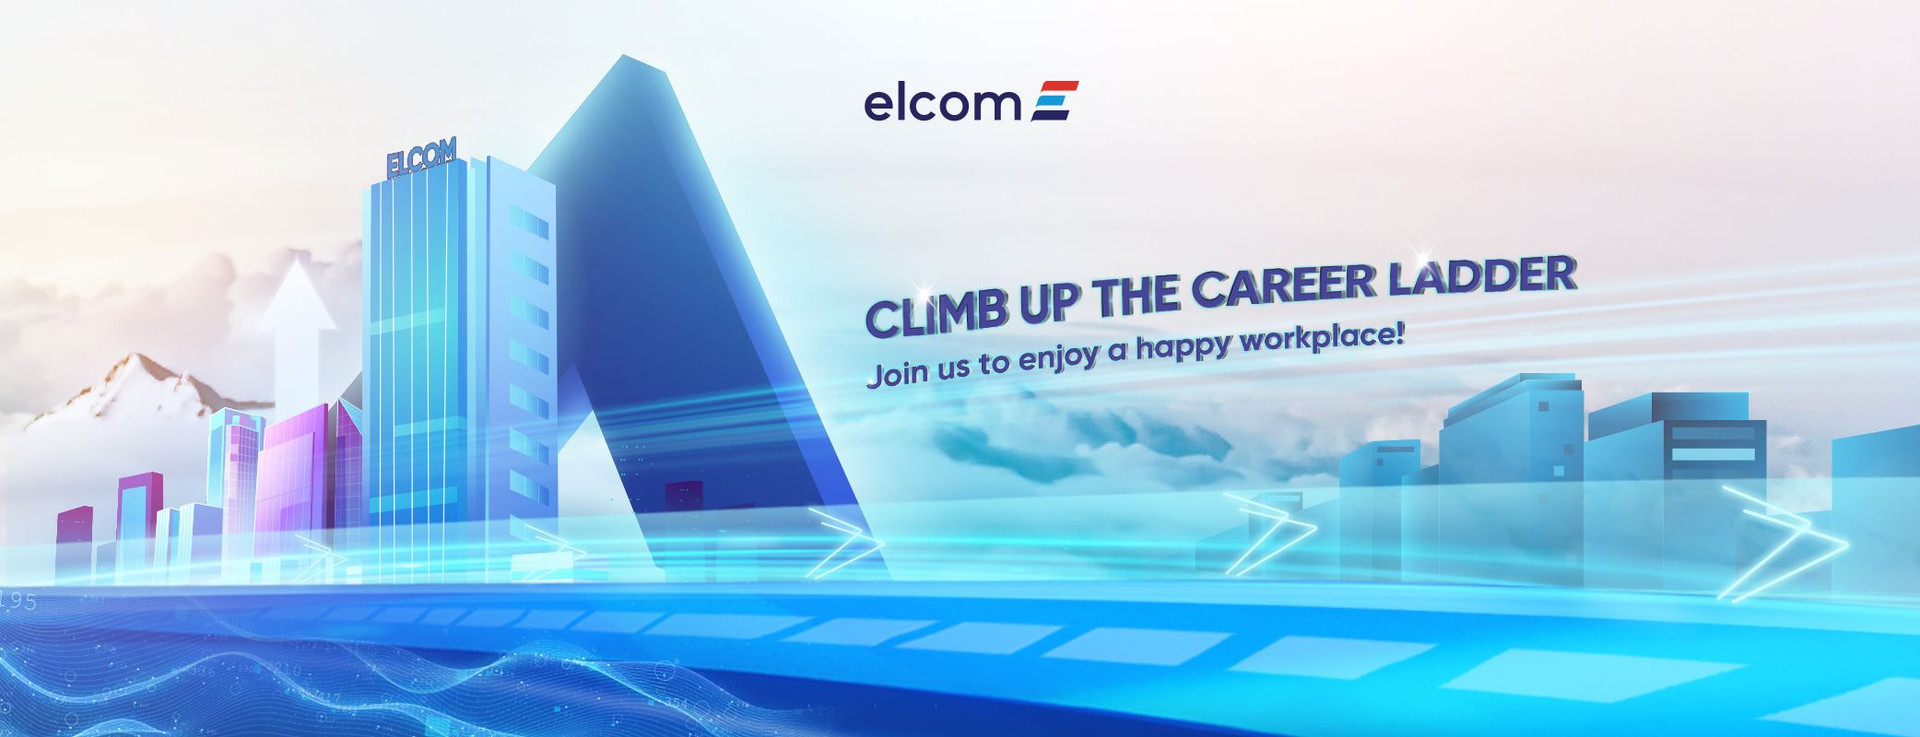 Công ty Cổ phần Công nghệ - Viễn thông Elcom